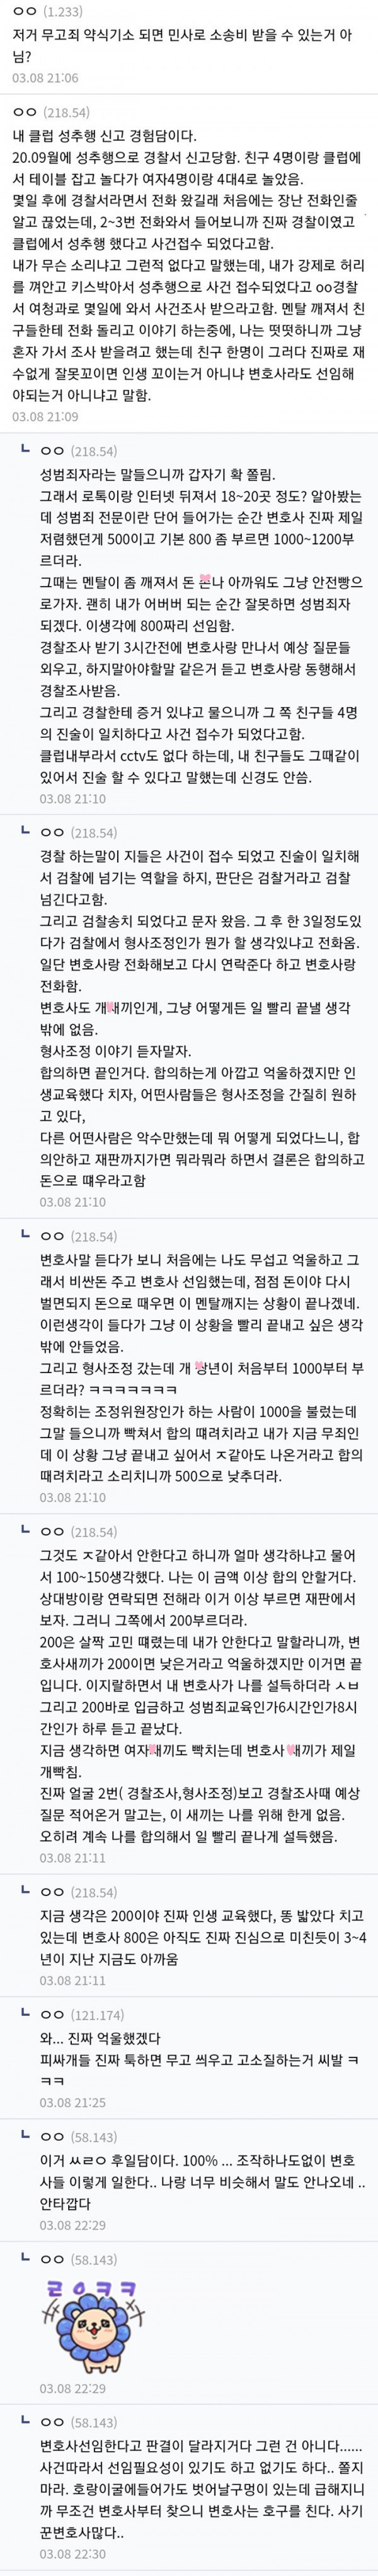 디갤] 클럽 성추행 미투당한 남자의 재판 썰.jpg